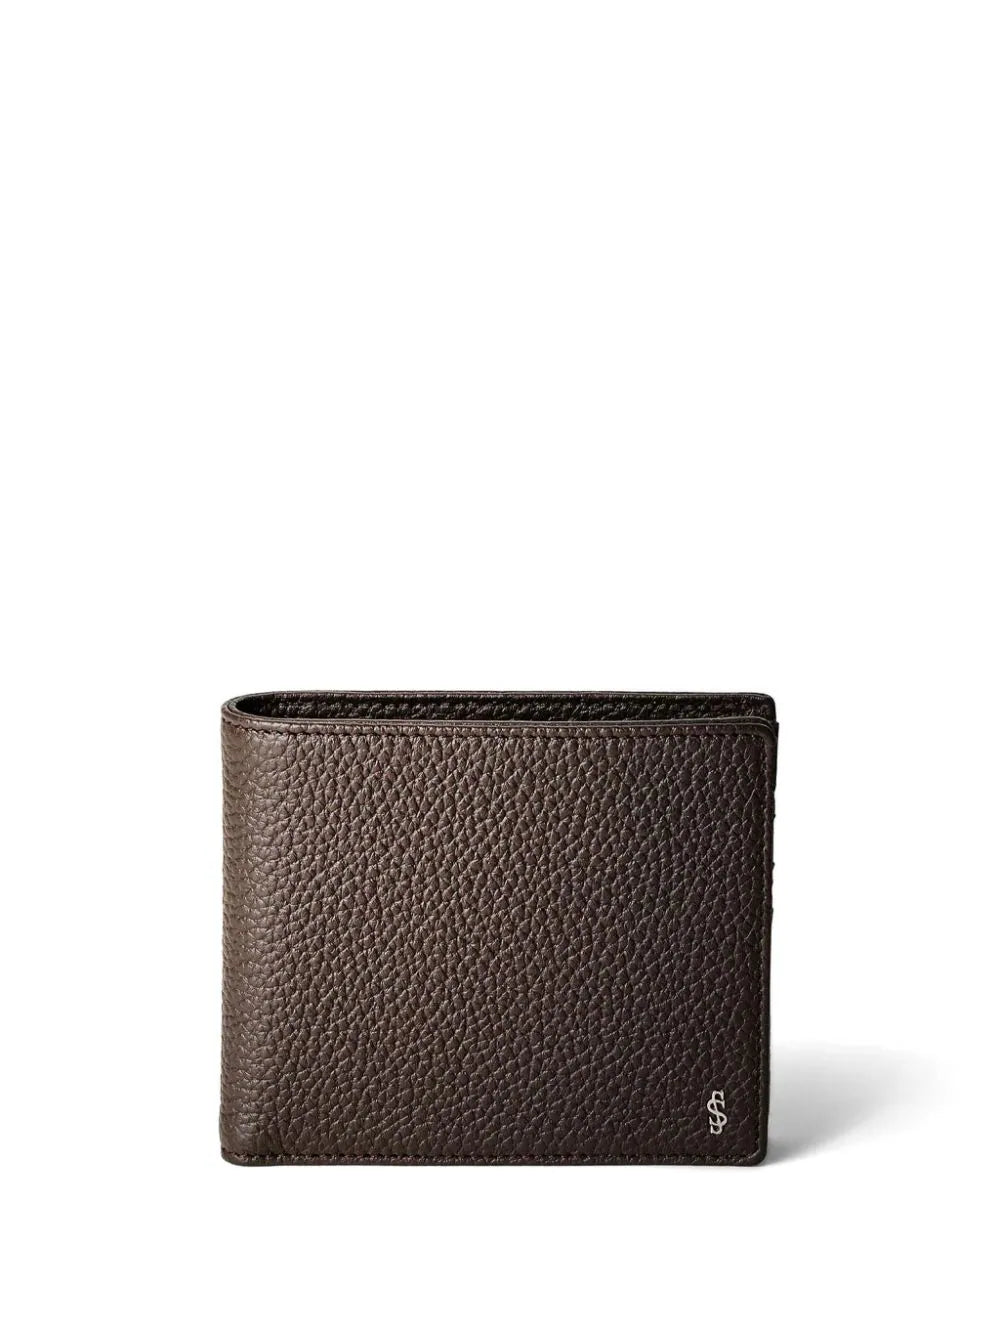 Shop Serapian Cachemire Leather Billfold Wallet